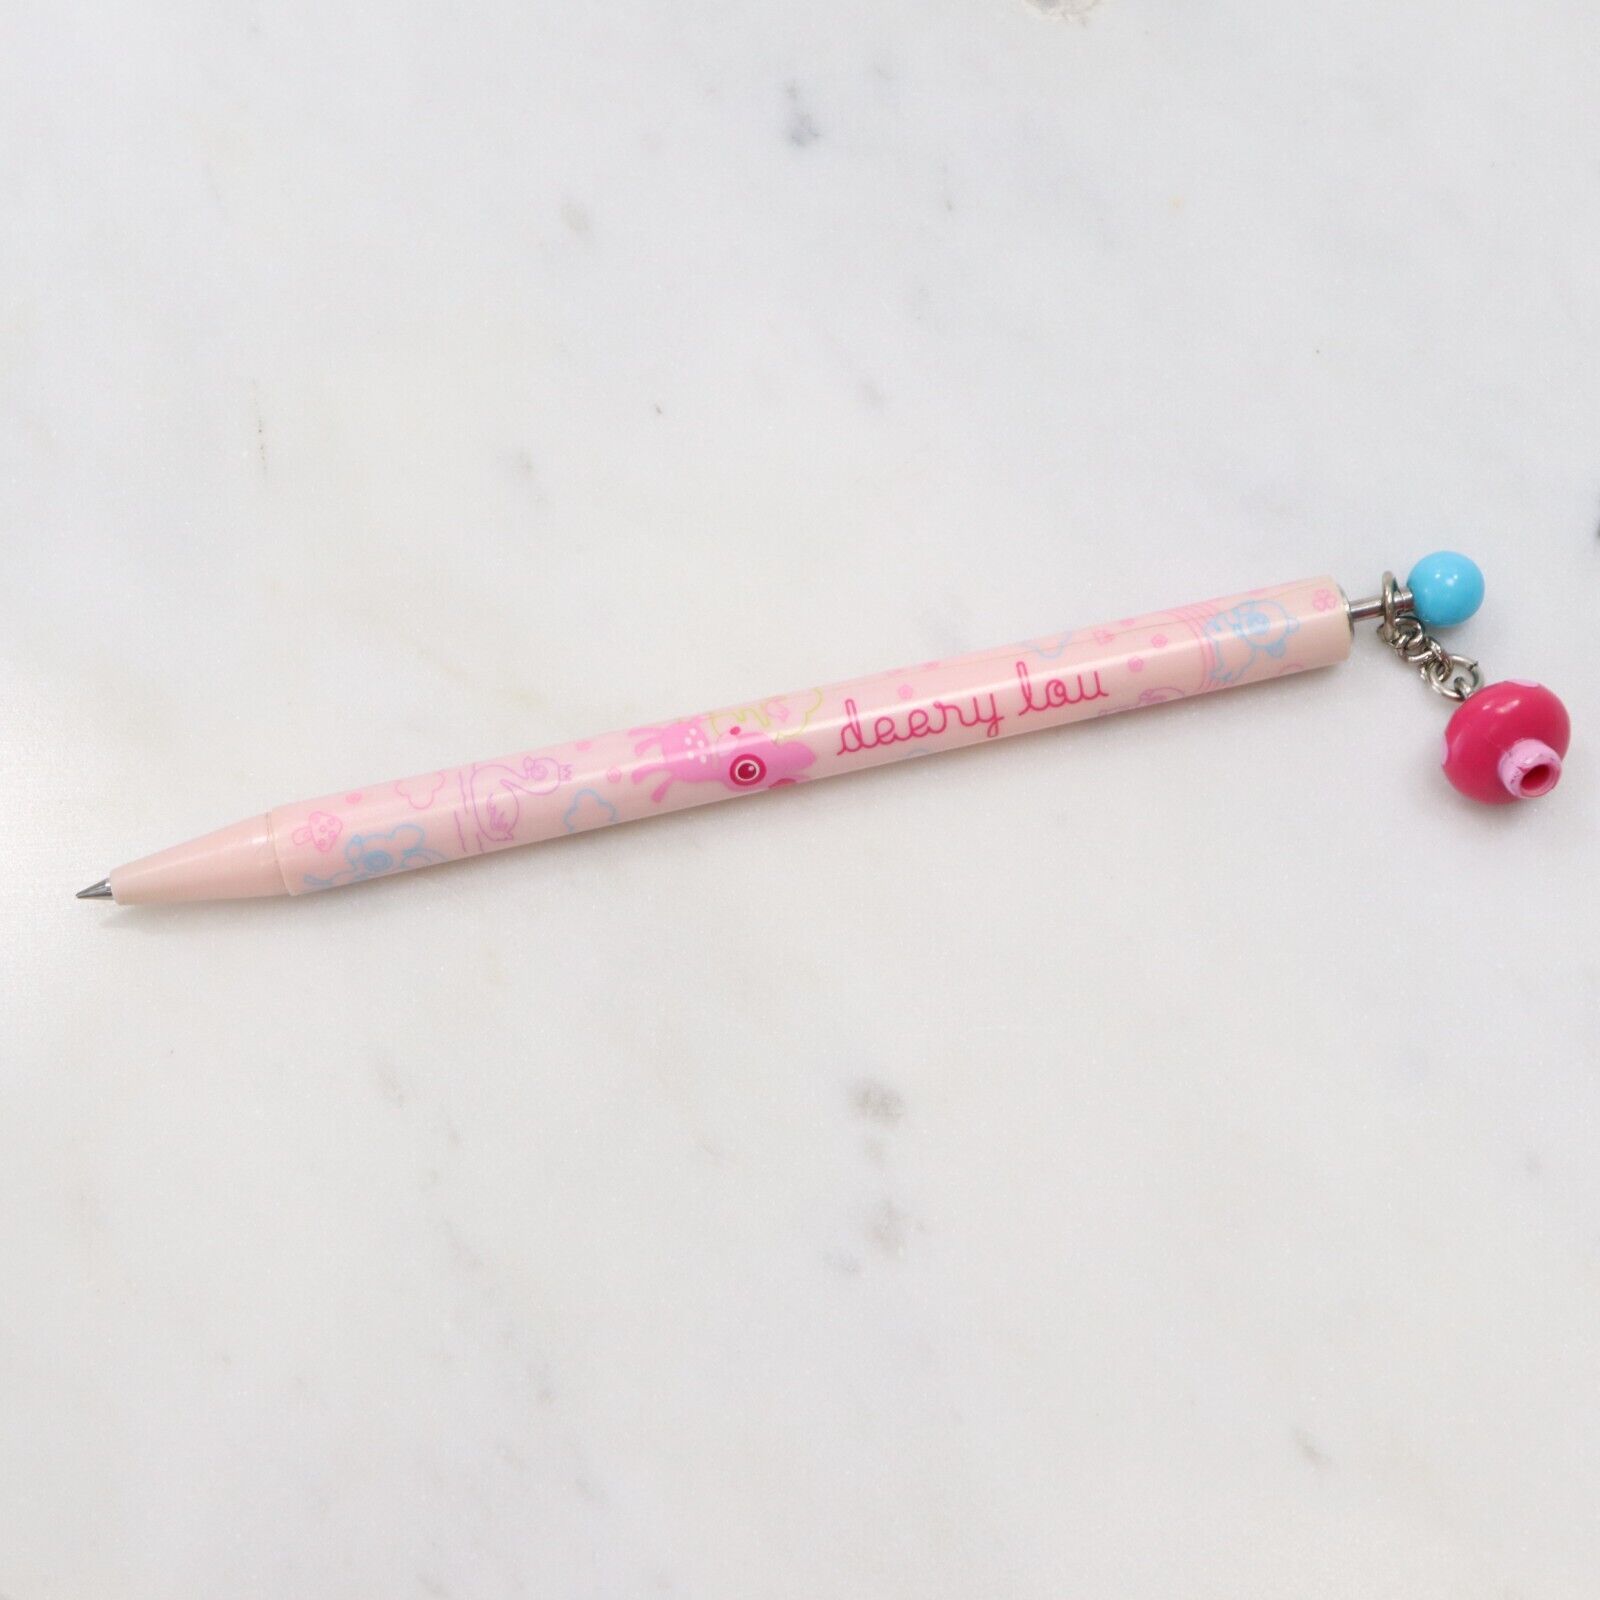 Vintage Sanrio Deery Lou Ballpoint Pen 0.5mm 2002-03 Pink Mushroom Charm New Ink